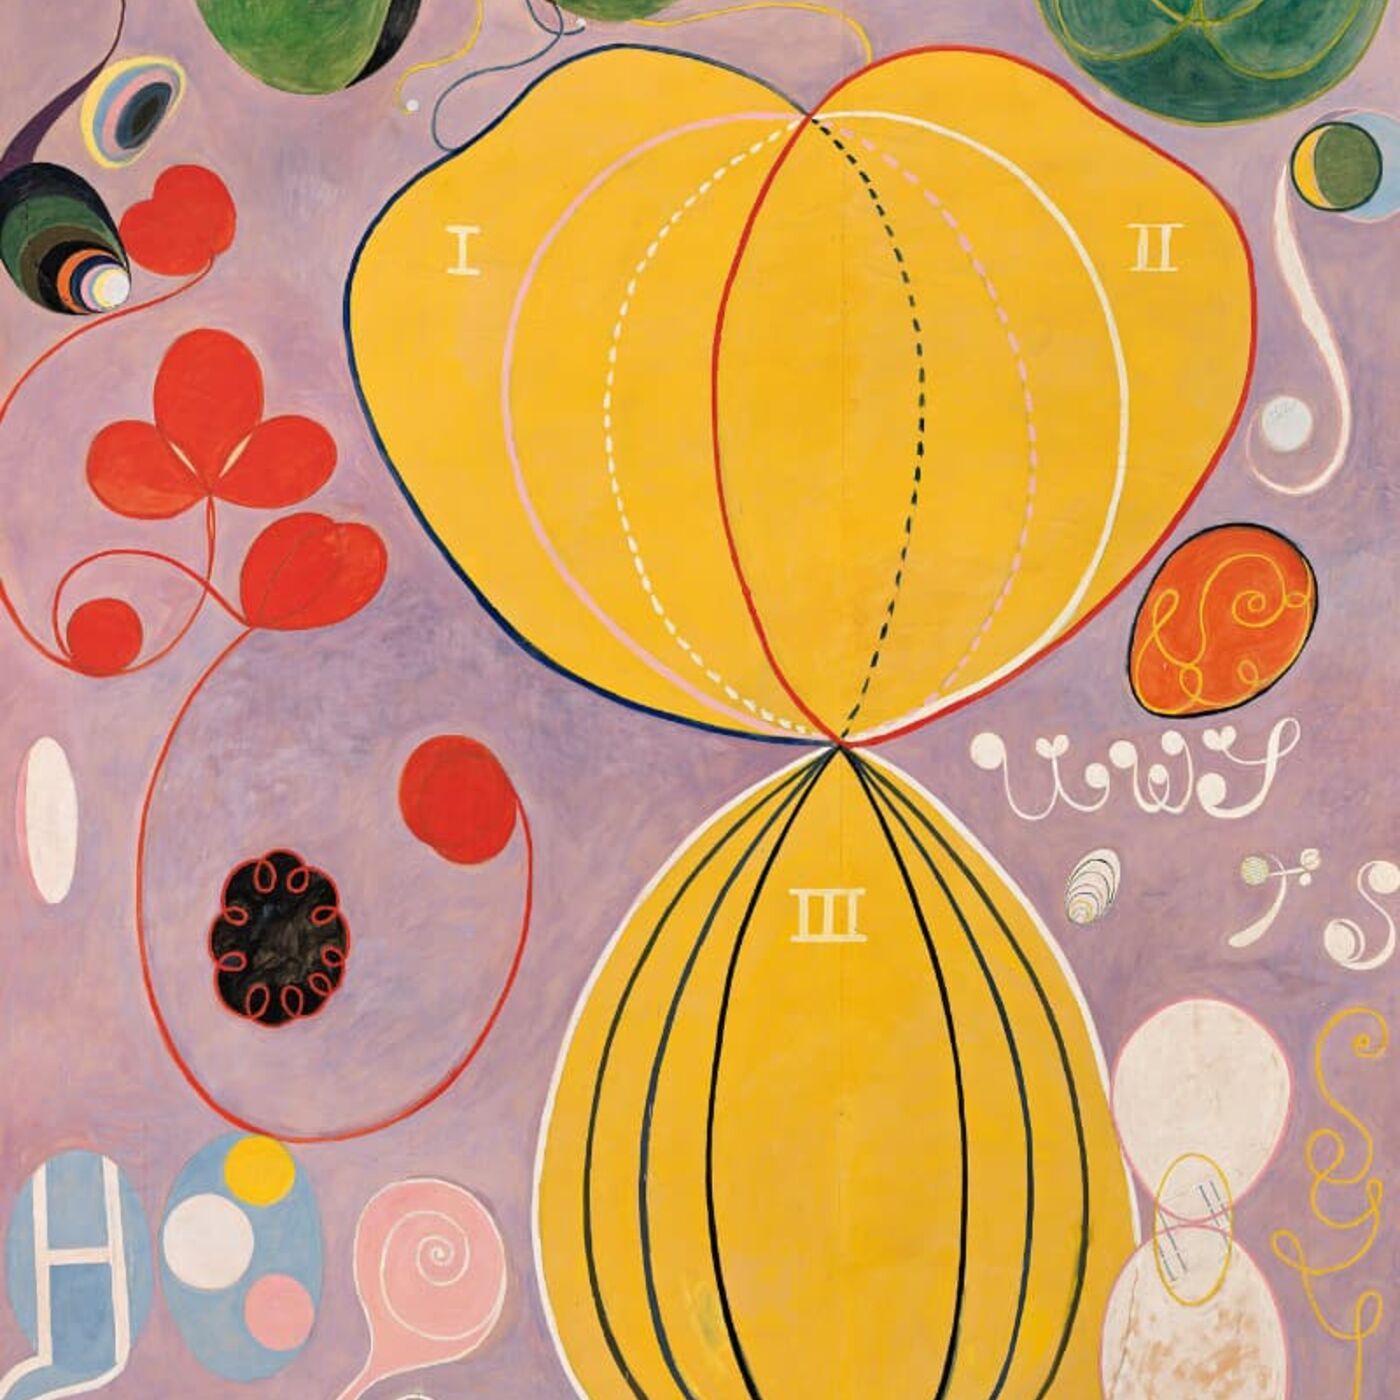 Hilma af Klint, la pionera del arte abstracto